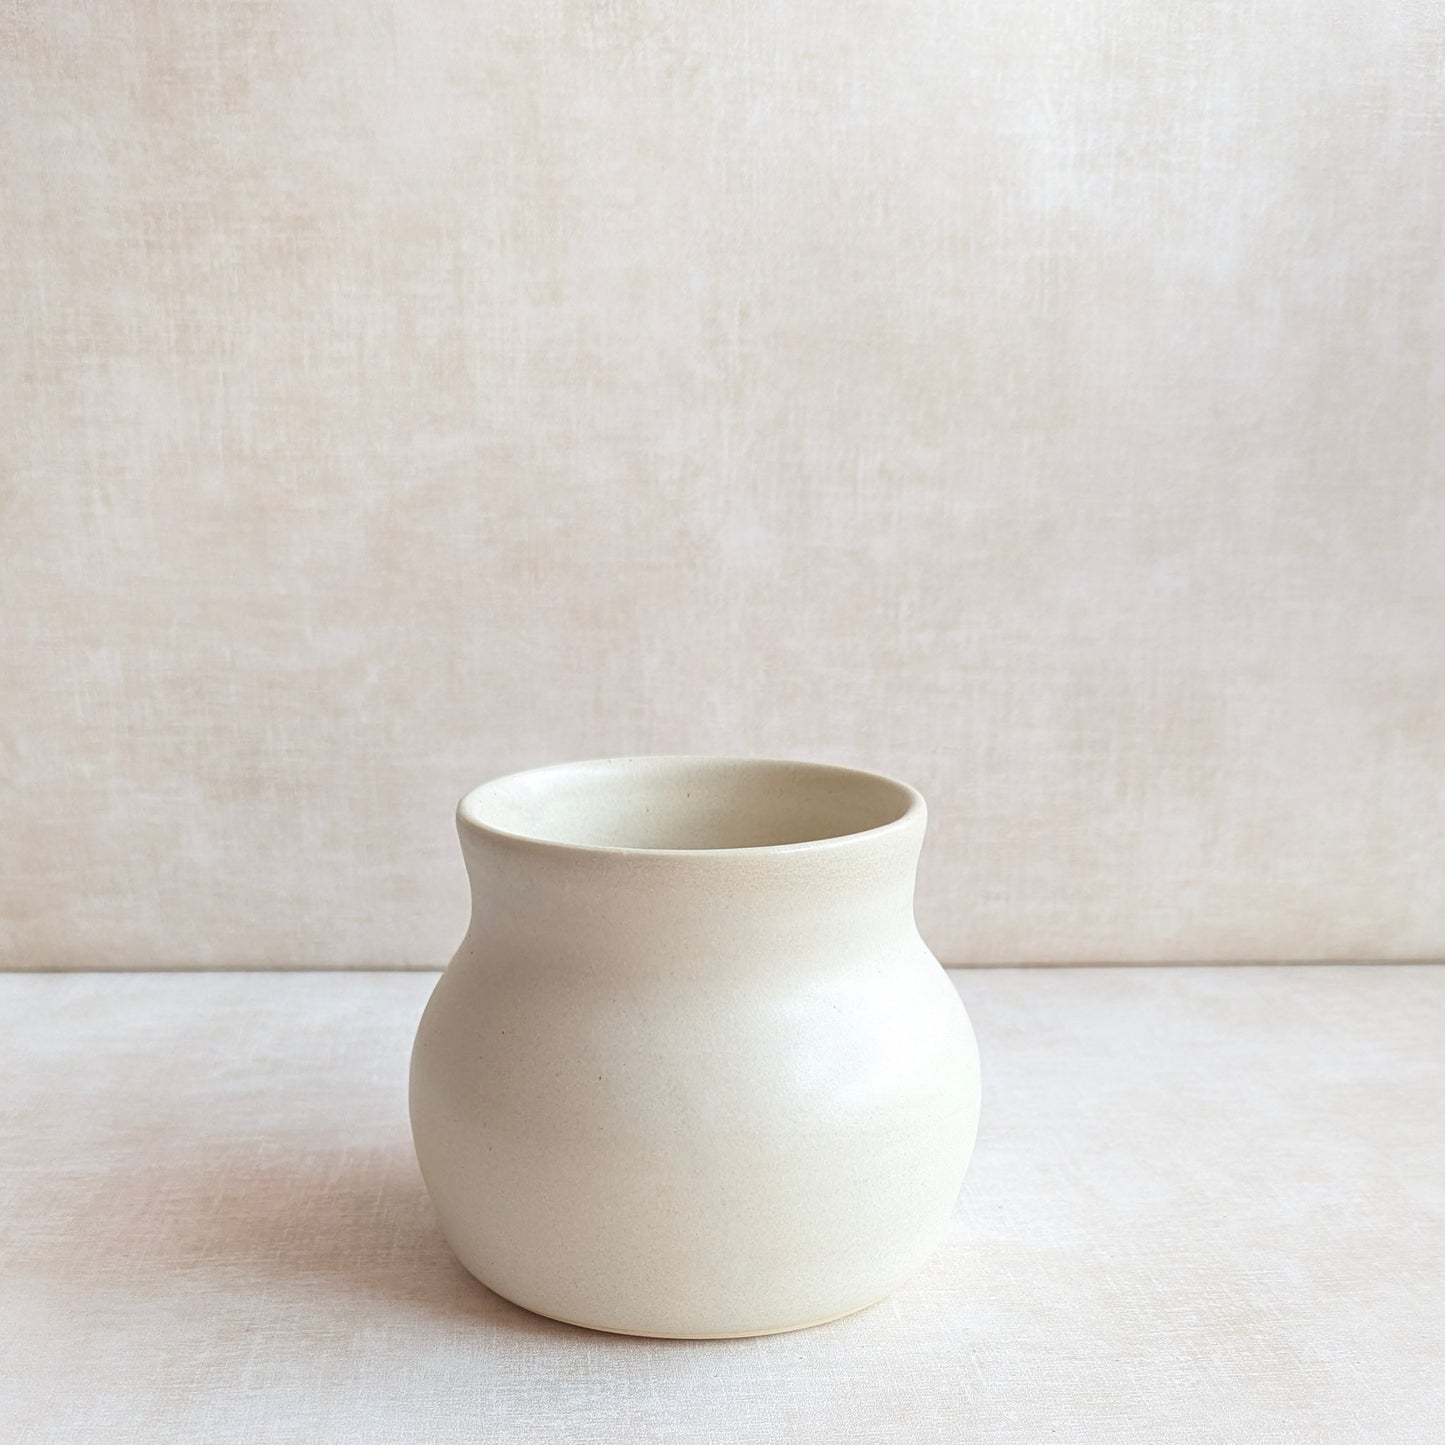 Bowl and Vase Vignette Set of 2